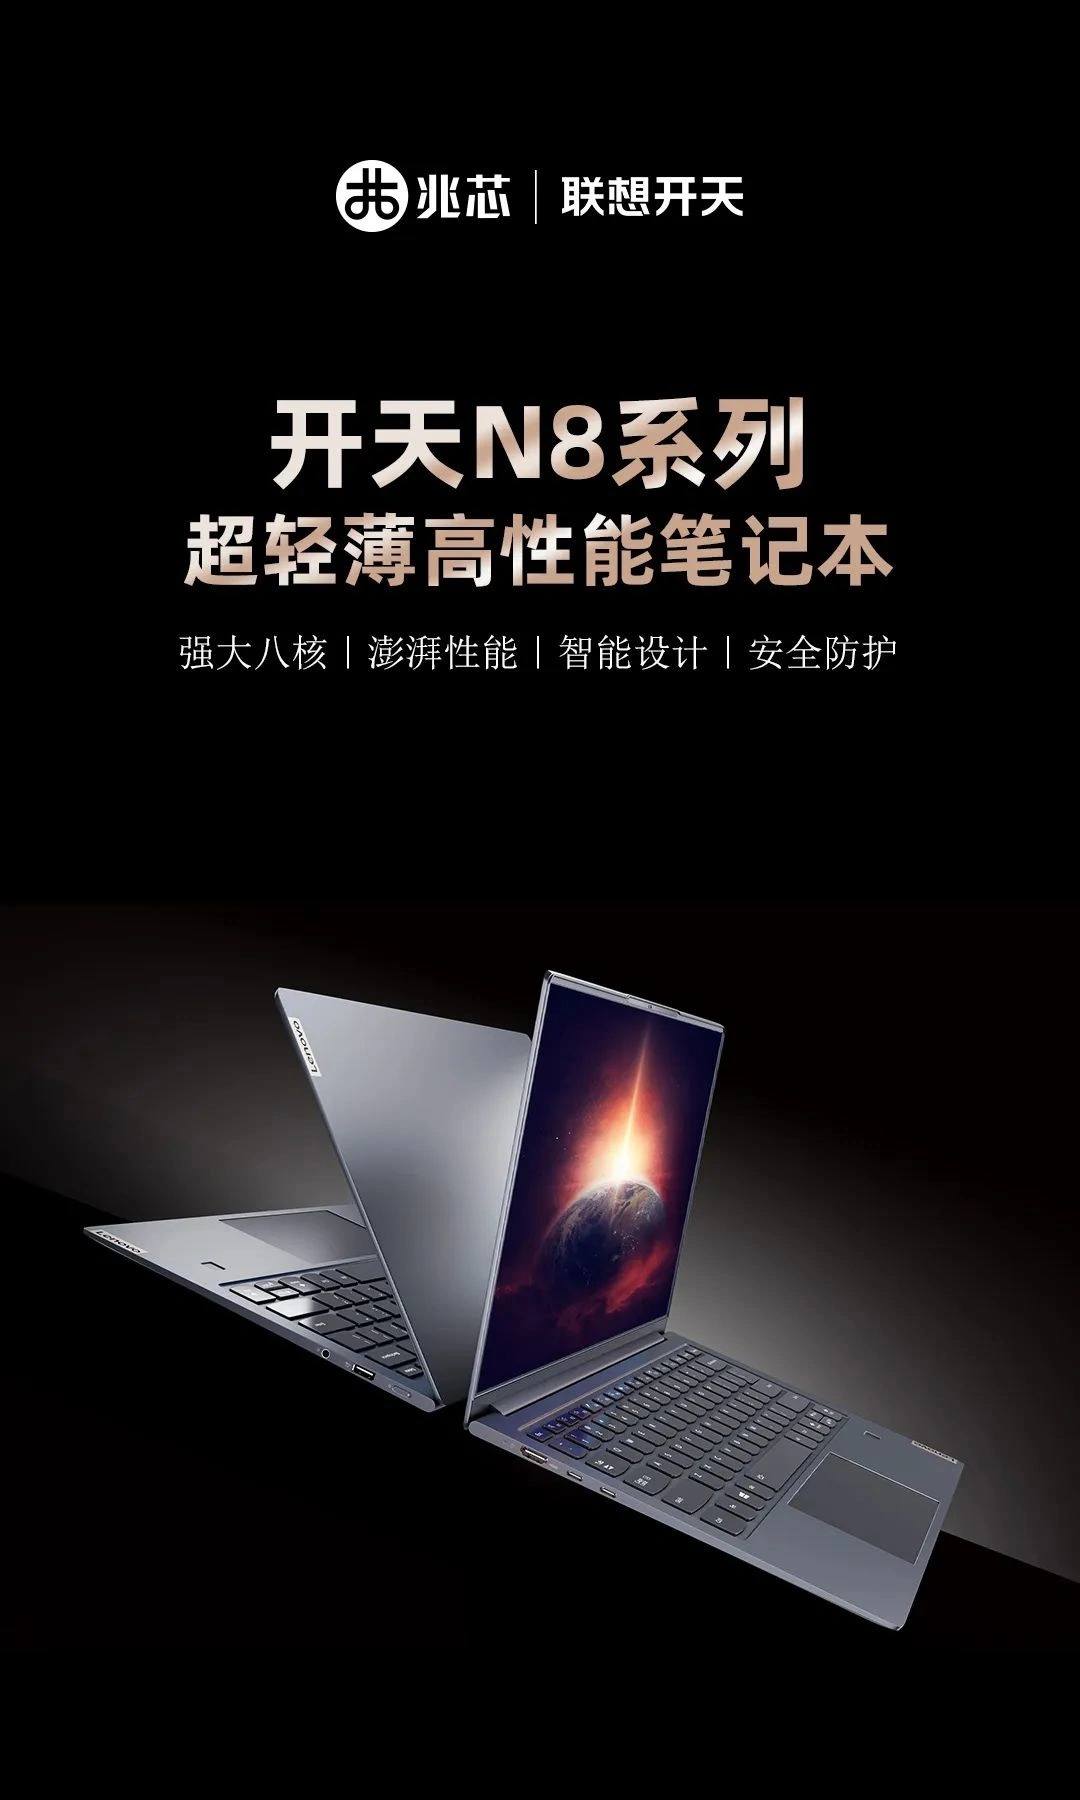 Lenovo Kaitian N8 series notebooks with Kaixian KX-6000 CPU announced | DroidAfrica